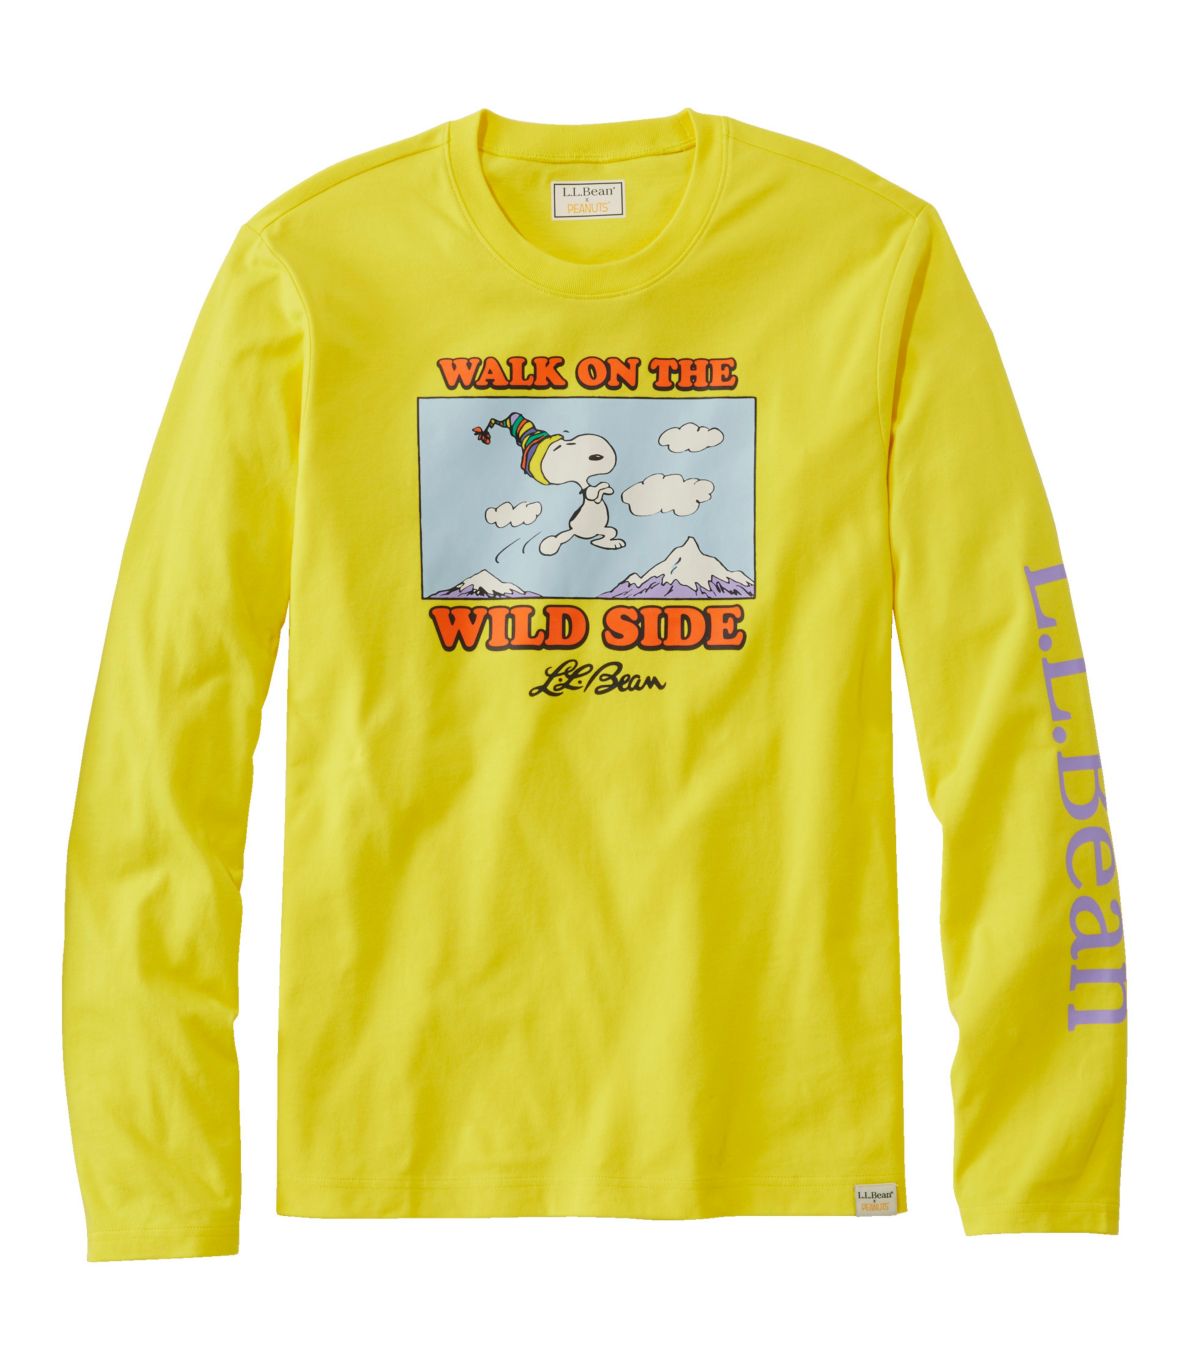 L.L.Bean x Peanuts Men's Long-Sleeve T-Shirt, Wild Side